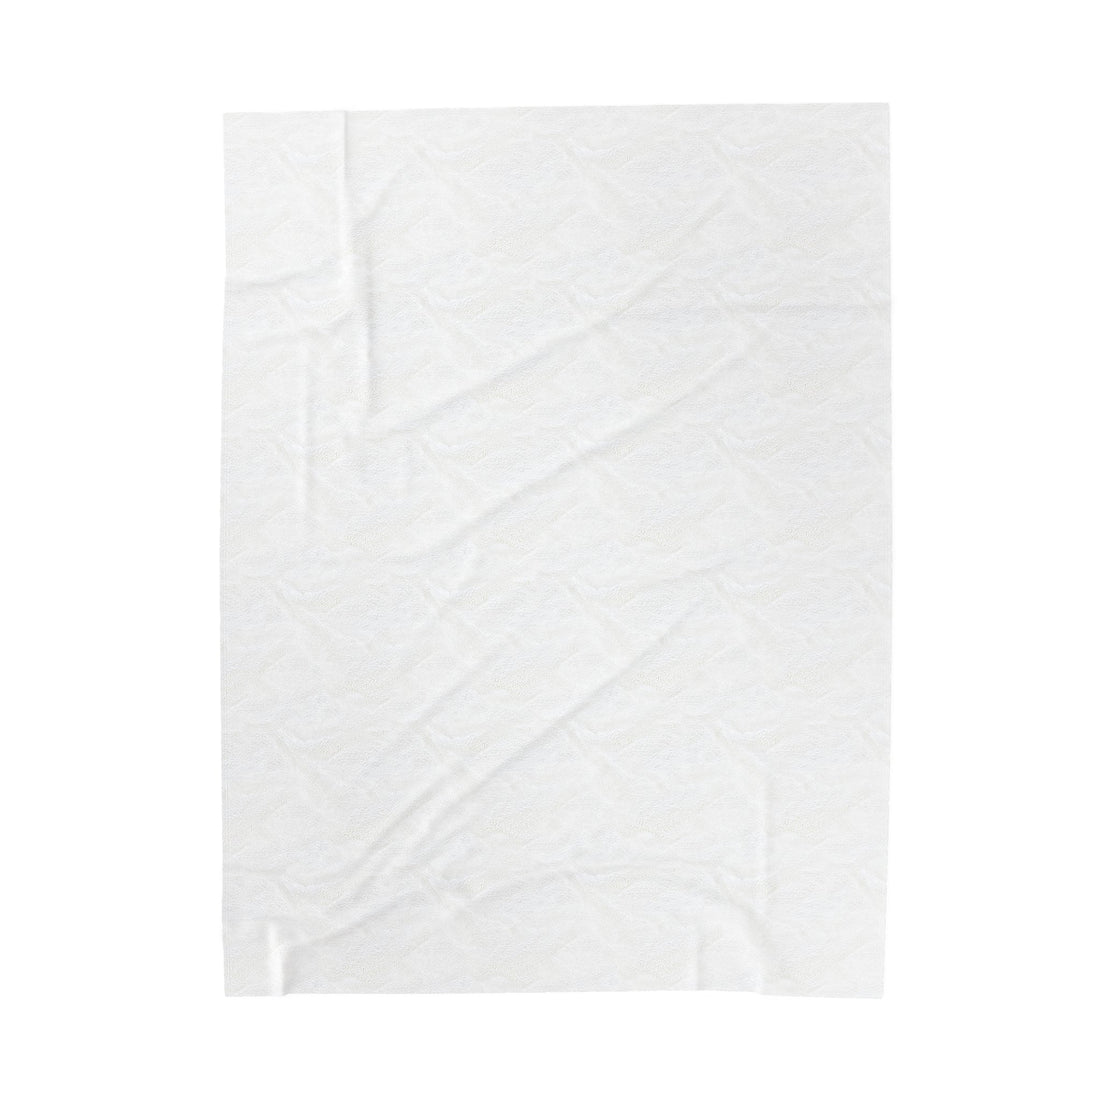 Cozy Velveteen Plush Blanket - All Over Prints - Positively Sassy - Cozy Velveteen Plush Blanket